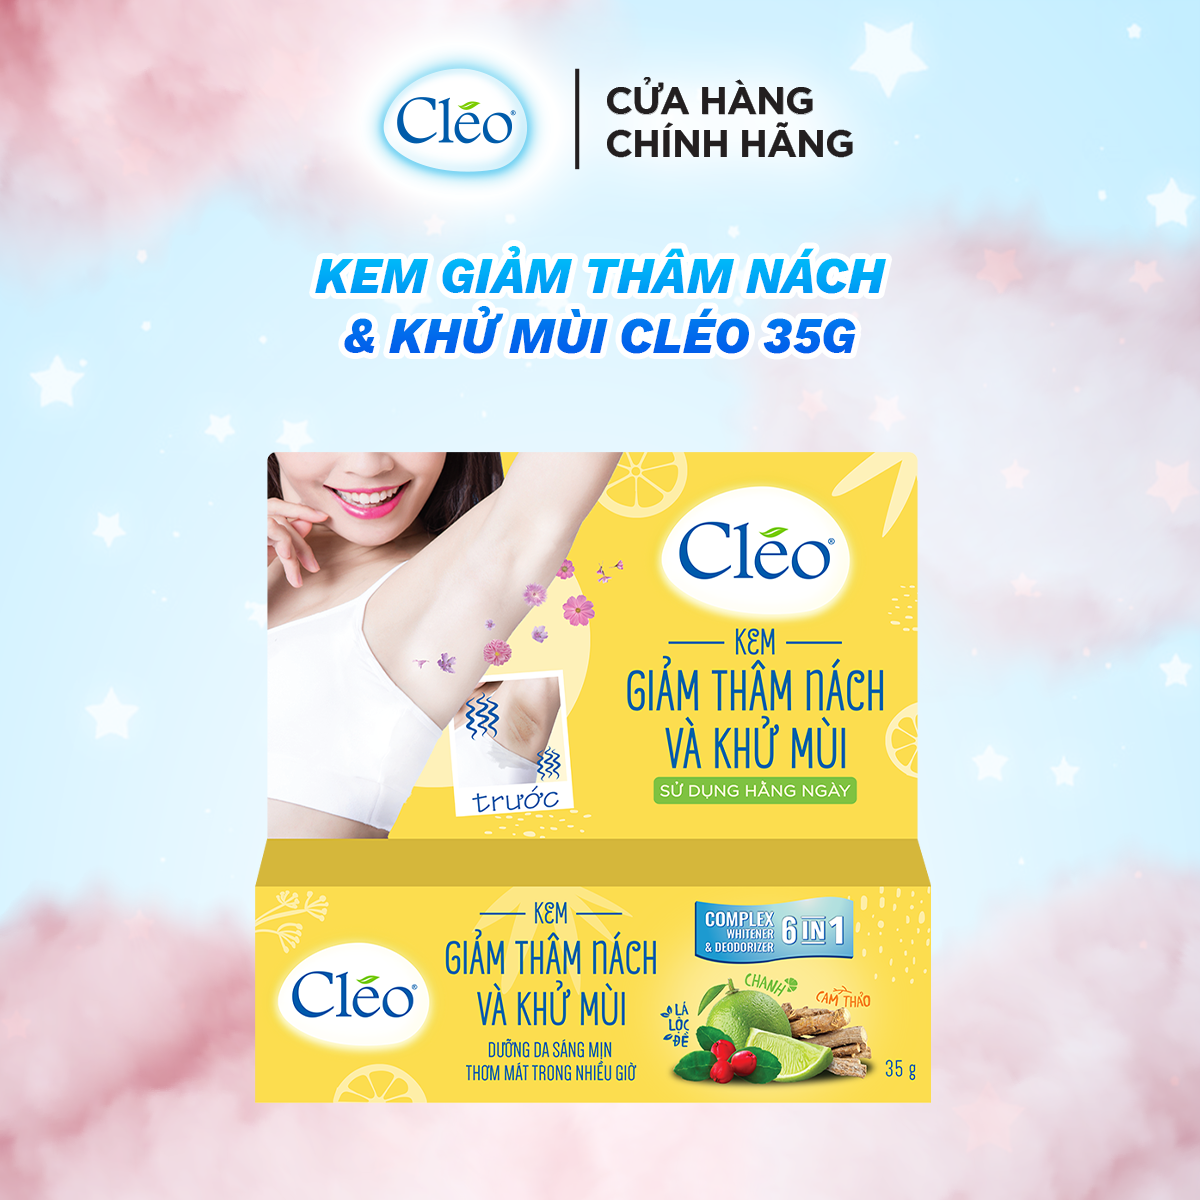  Kem trị thâm nách và khử mùi Cleo 35g, hiệu quả sau 4 tuần sử dụng 